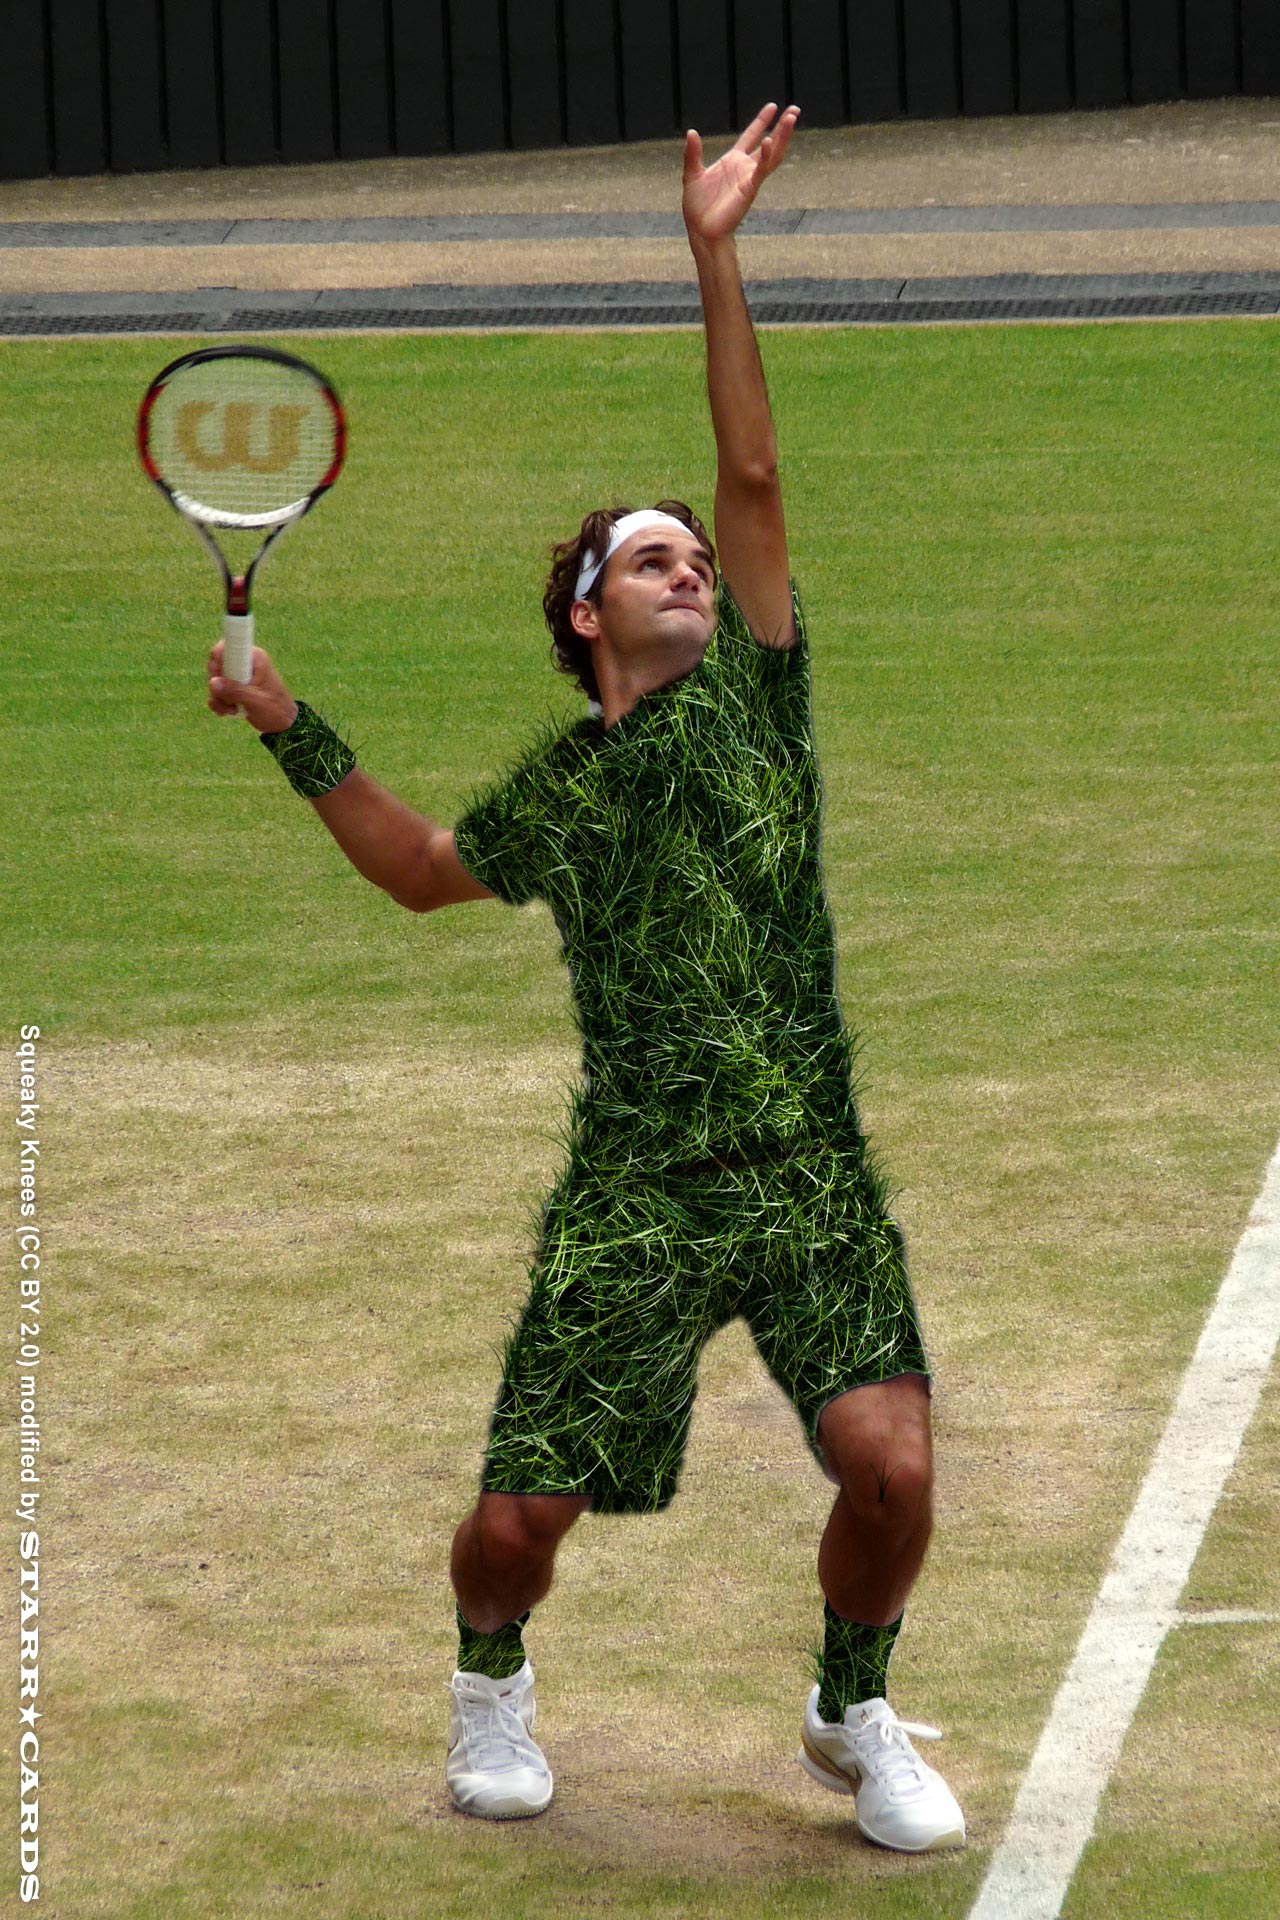 Roger Federer the King of Grass